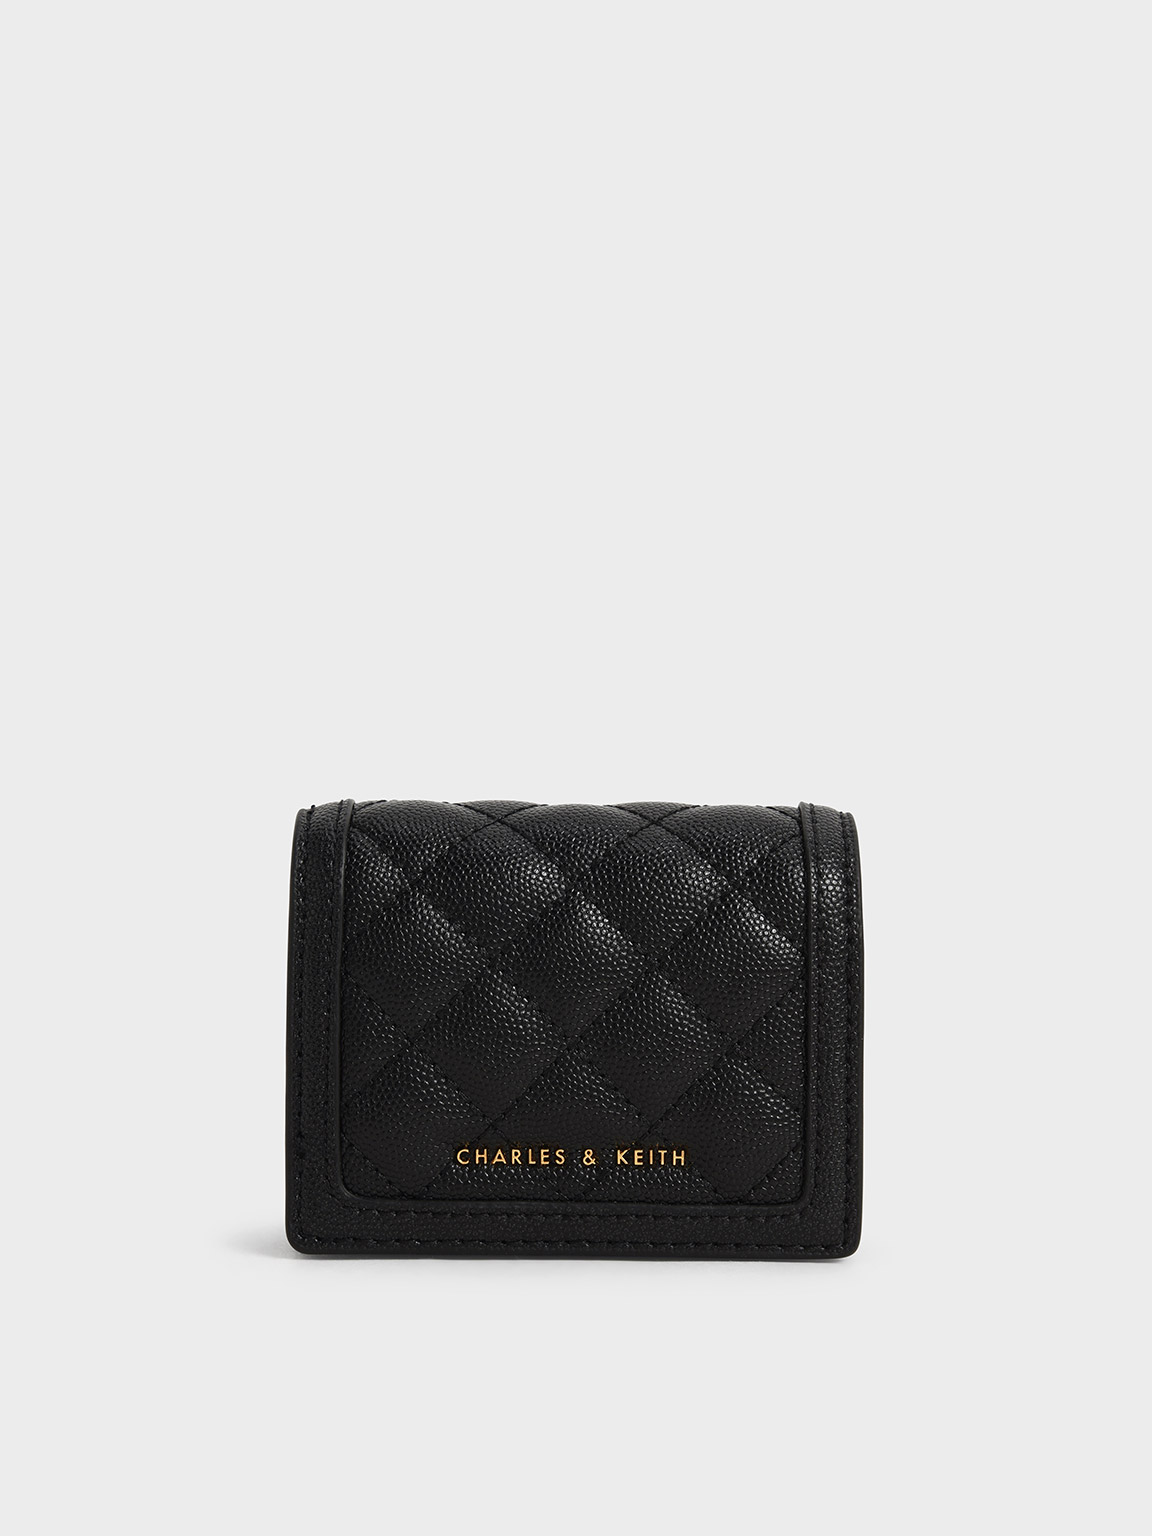 Lv black wallet - Gem